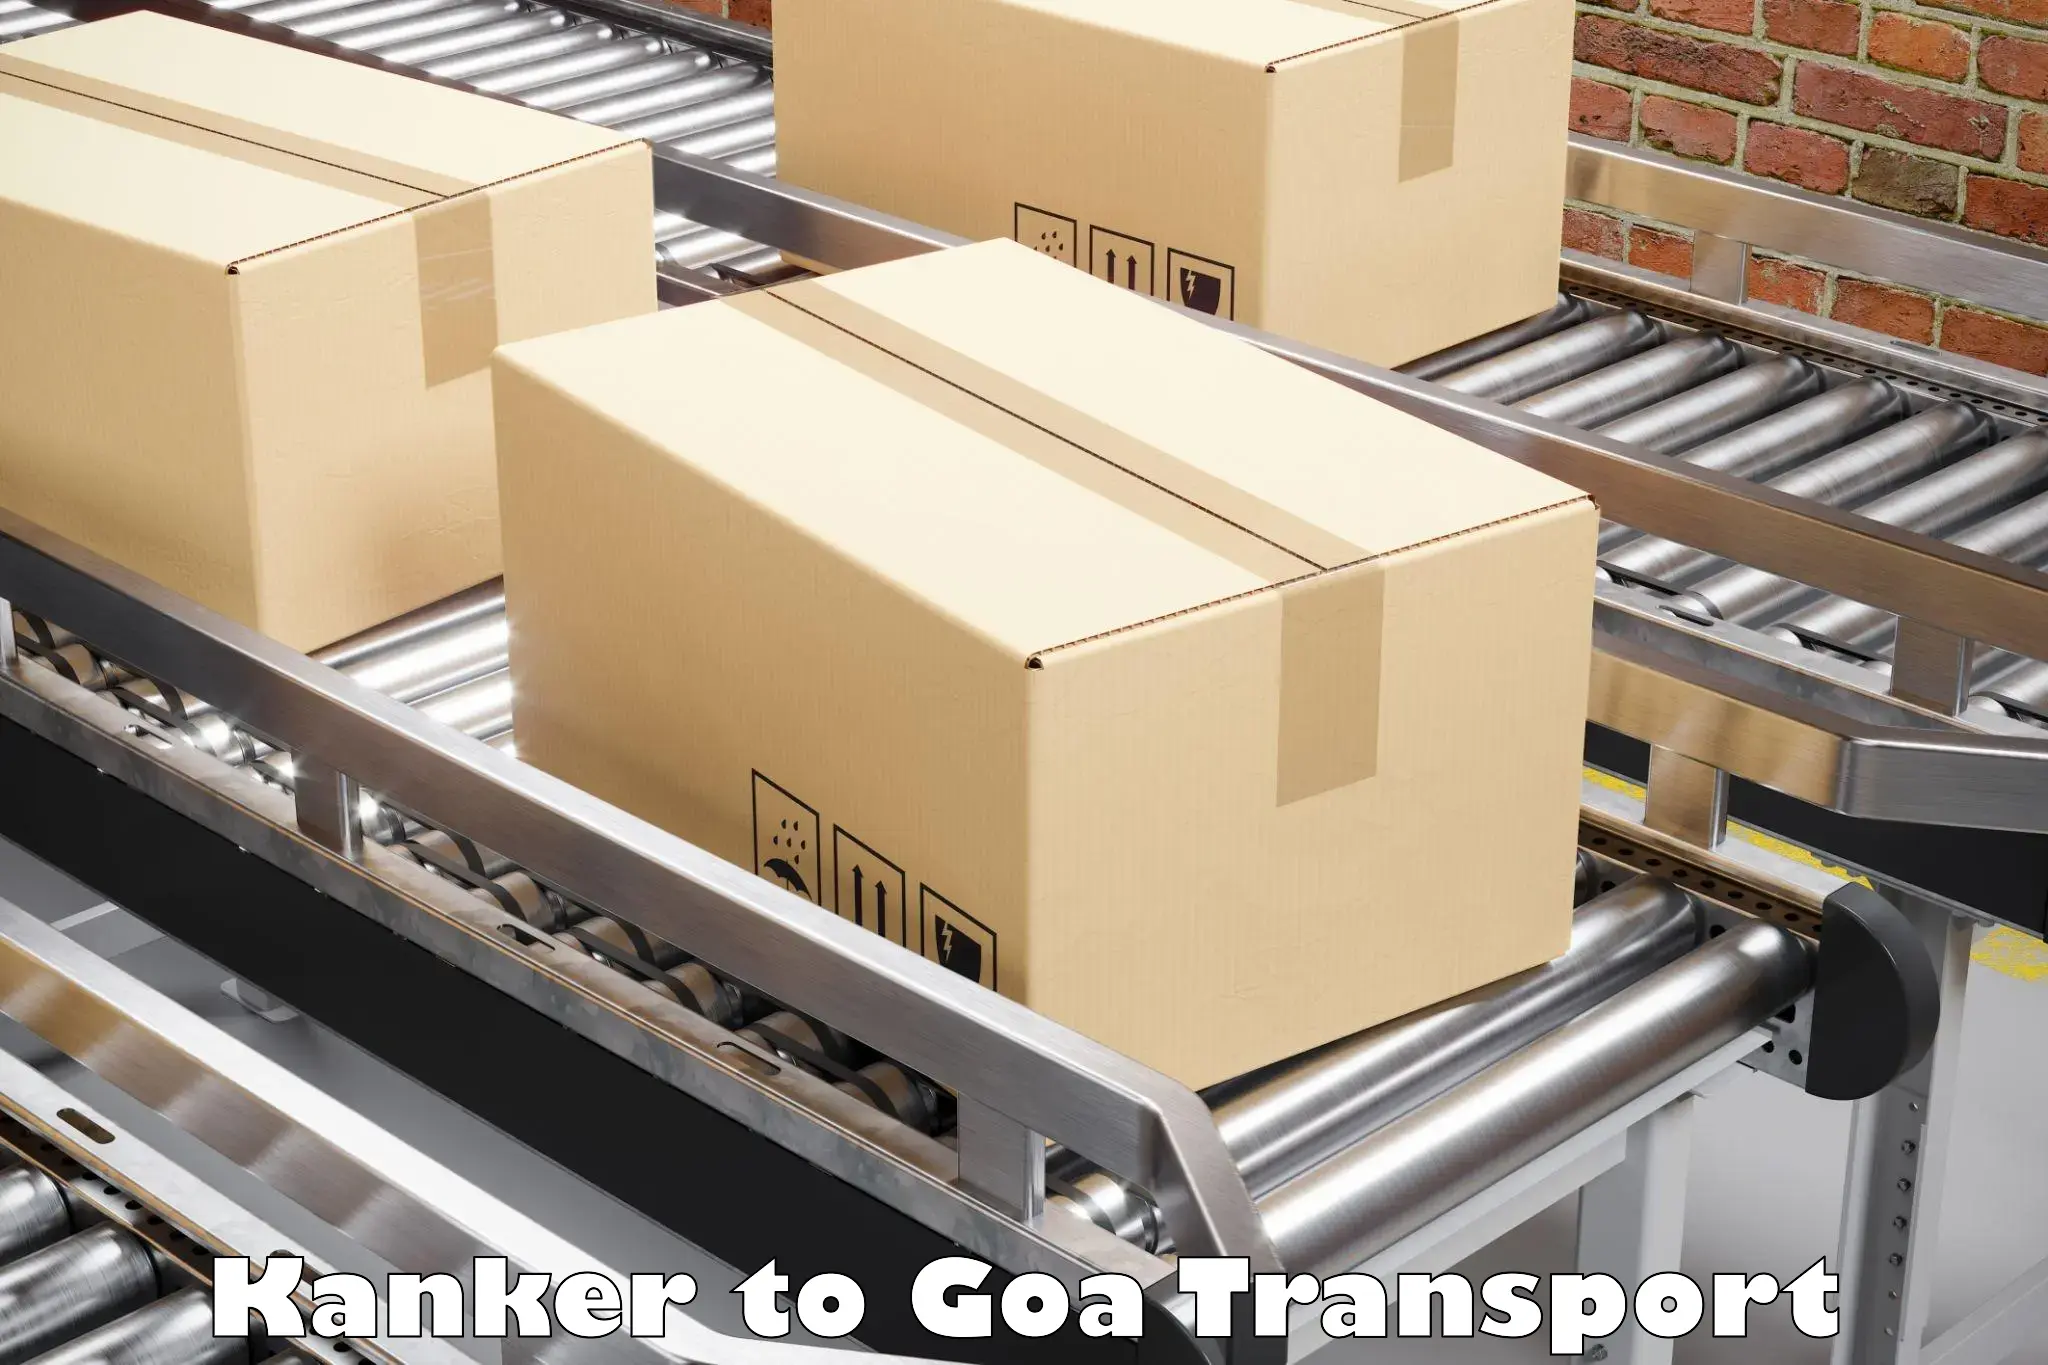 Furniture transport service Kanker to Goa